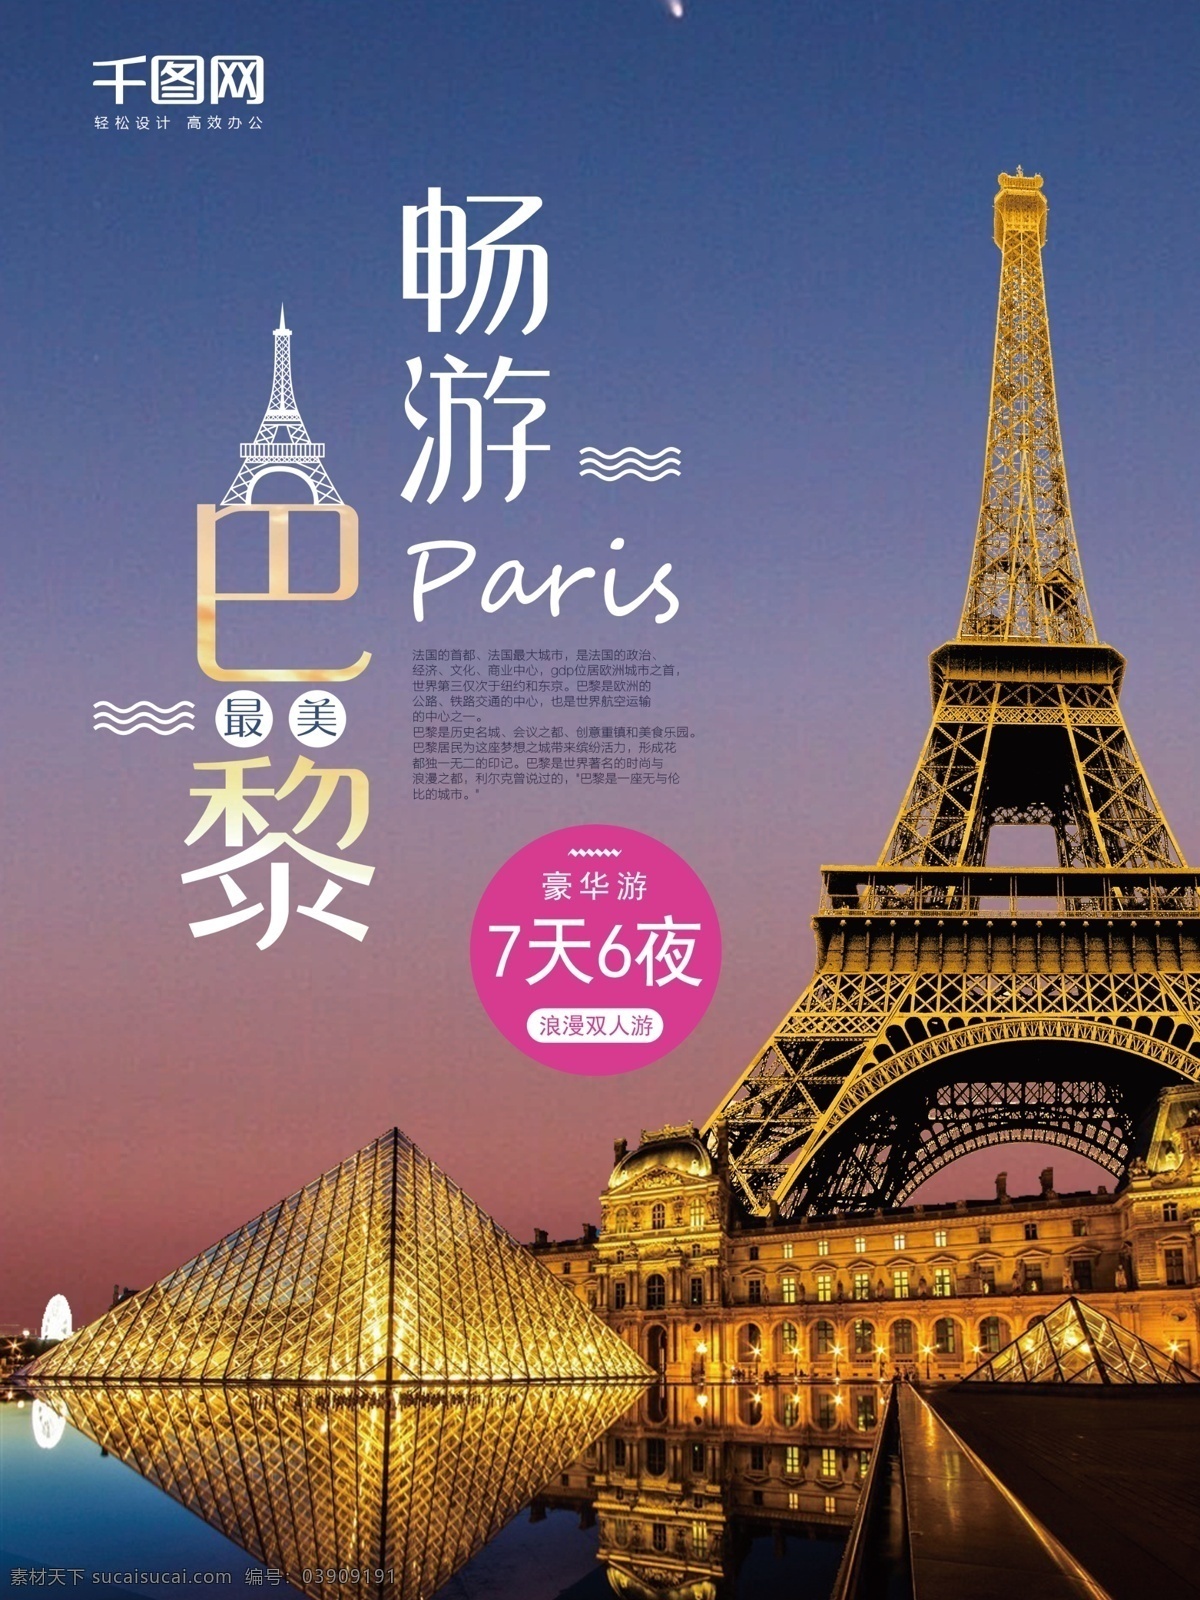 大气 简约 浪漫 巴黎 旅游 促销 海报 埃菲尔铁塔 浪漫巴黎 浪漫之都 法国 旅行 自由行 度假